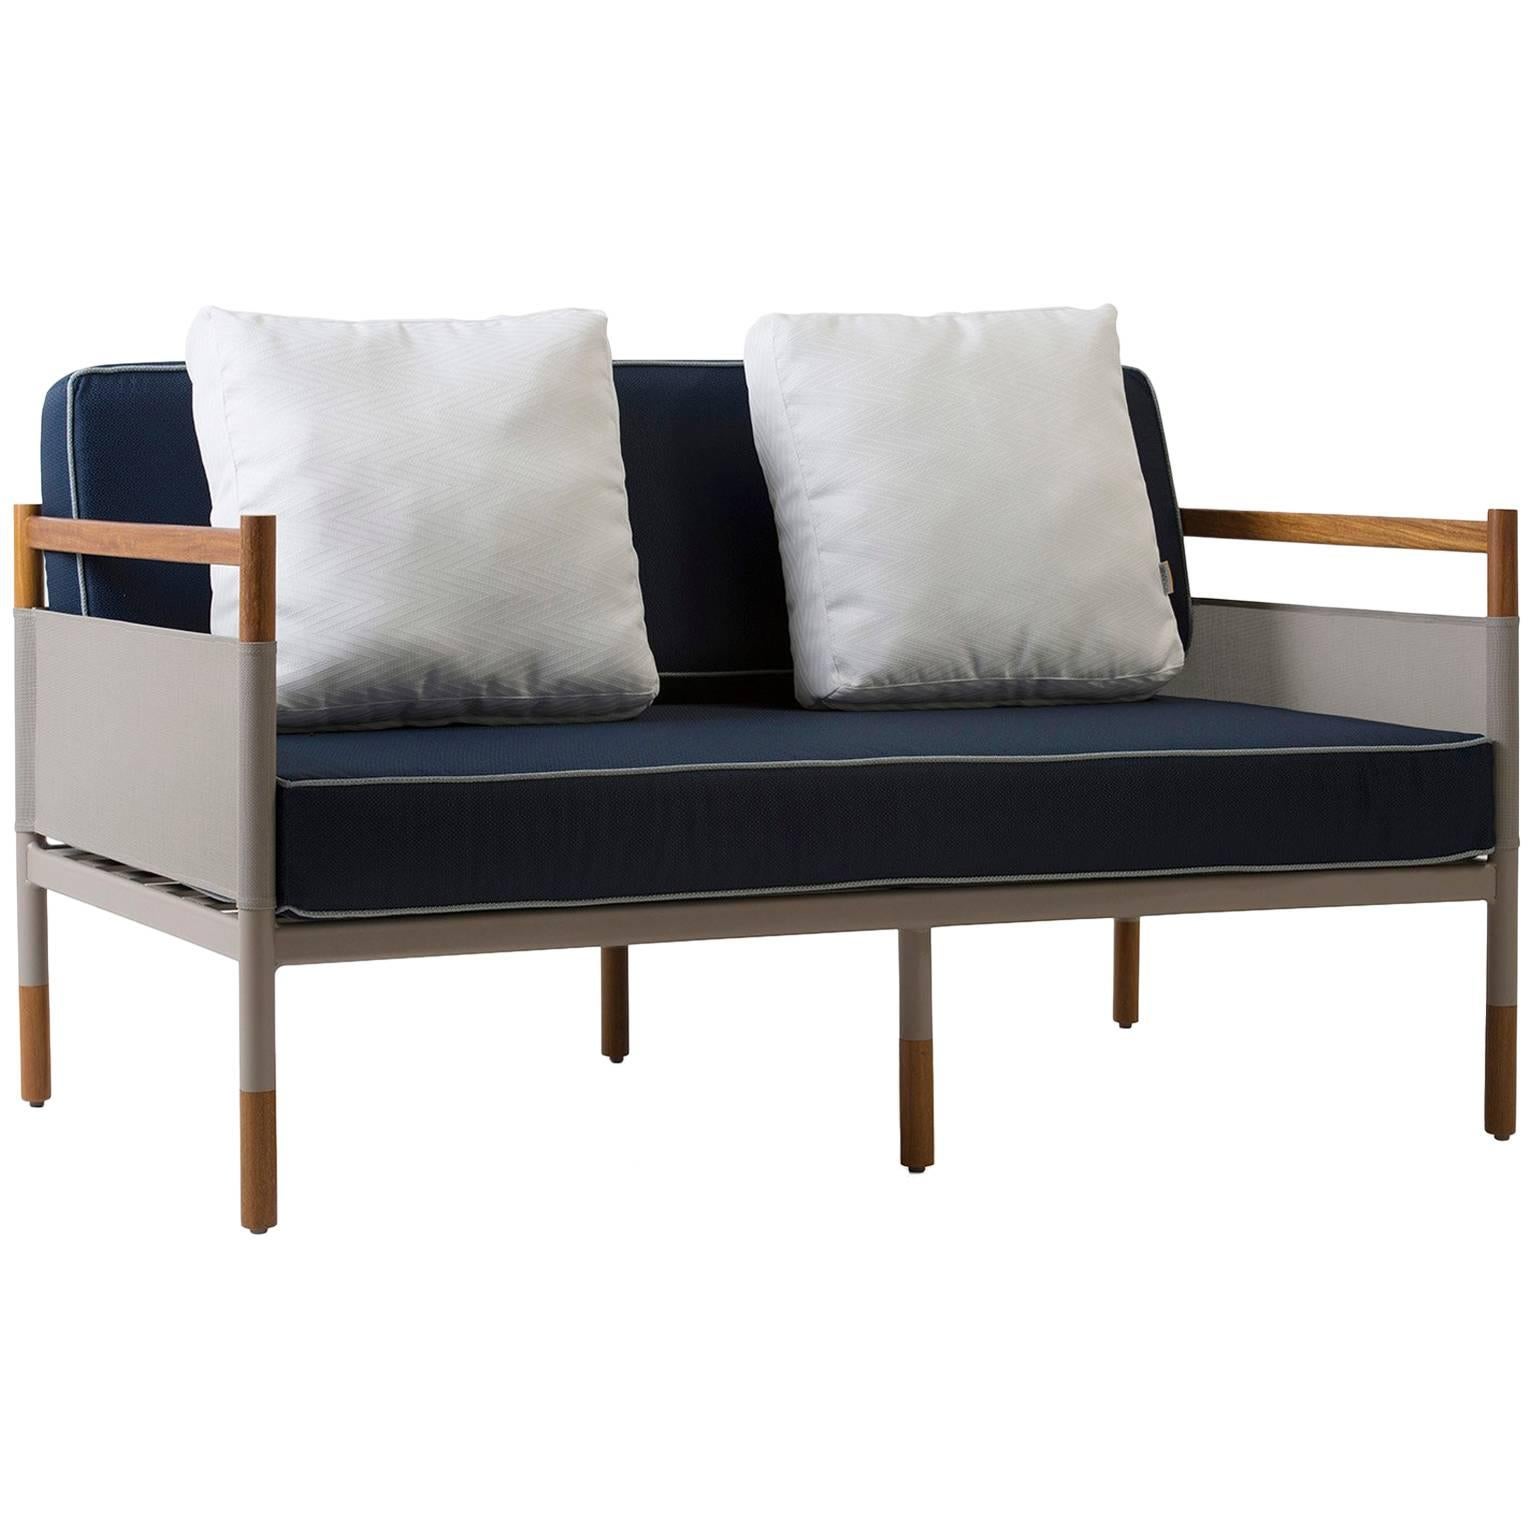 Minimalist Sofa for Outdoor, Contemporary Brazilian Design For Sale